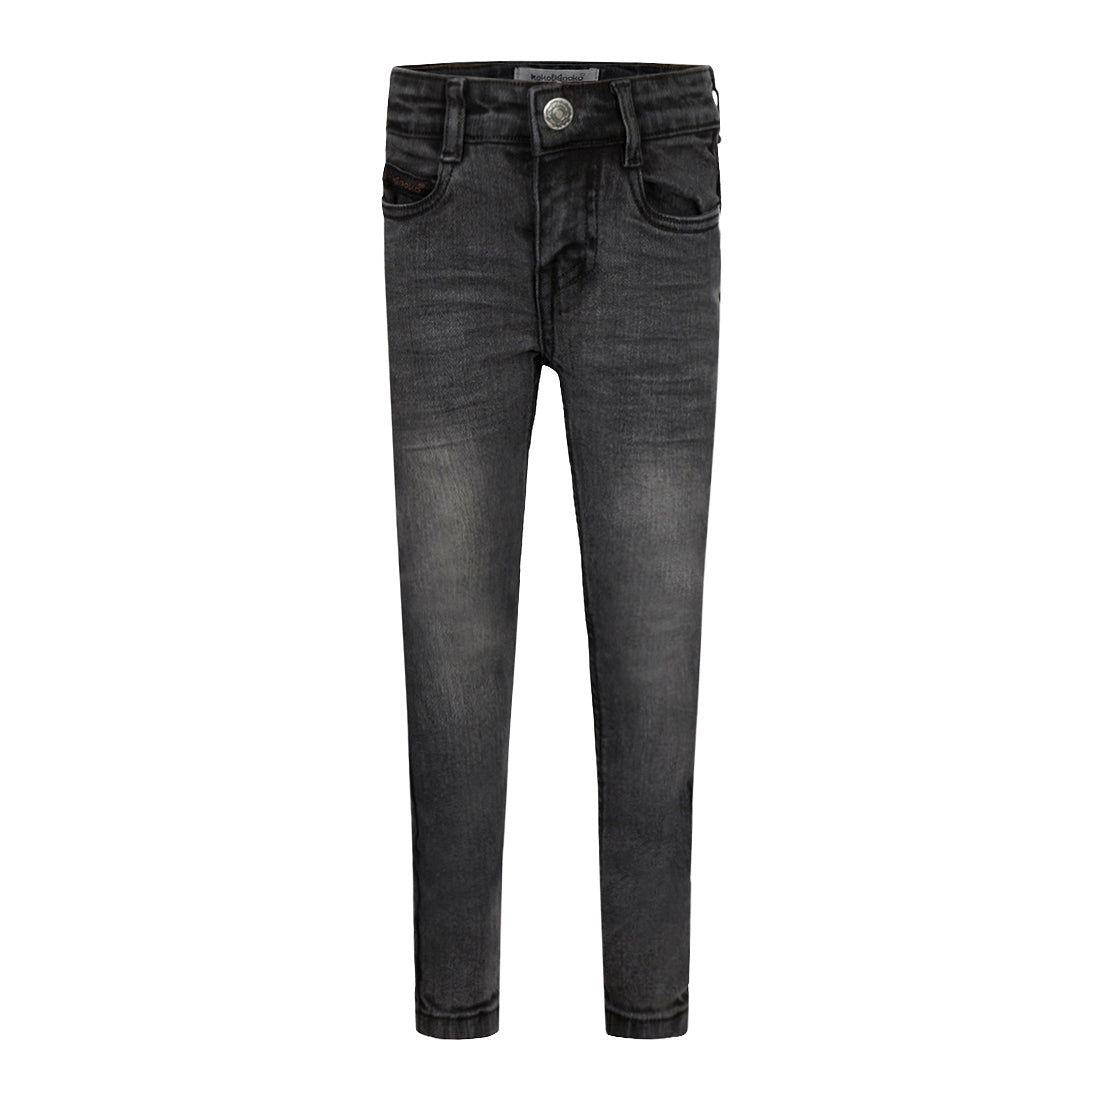 Jongens Jeans Skinny van Koko Noko in de kleur Grey jeans in maat 128.